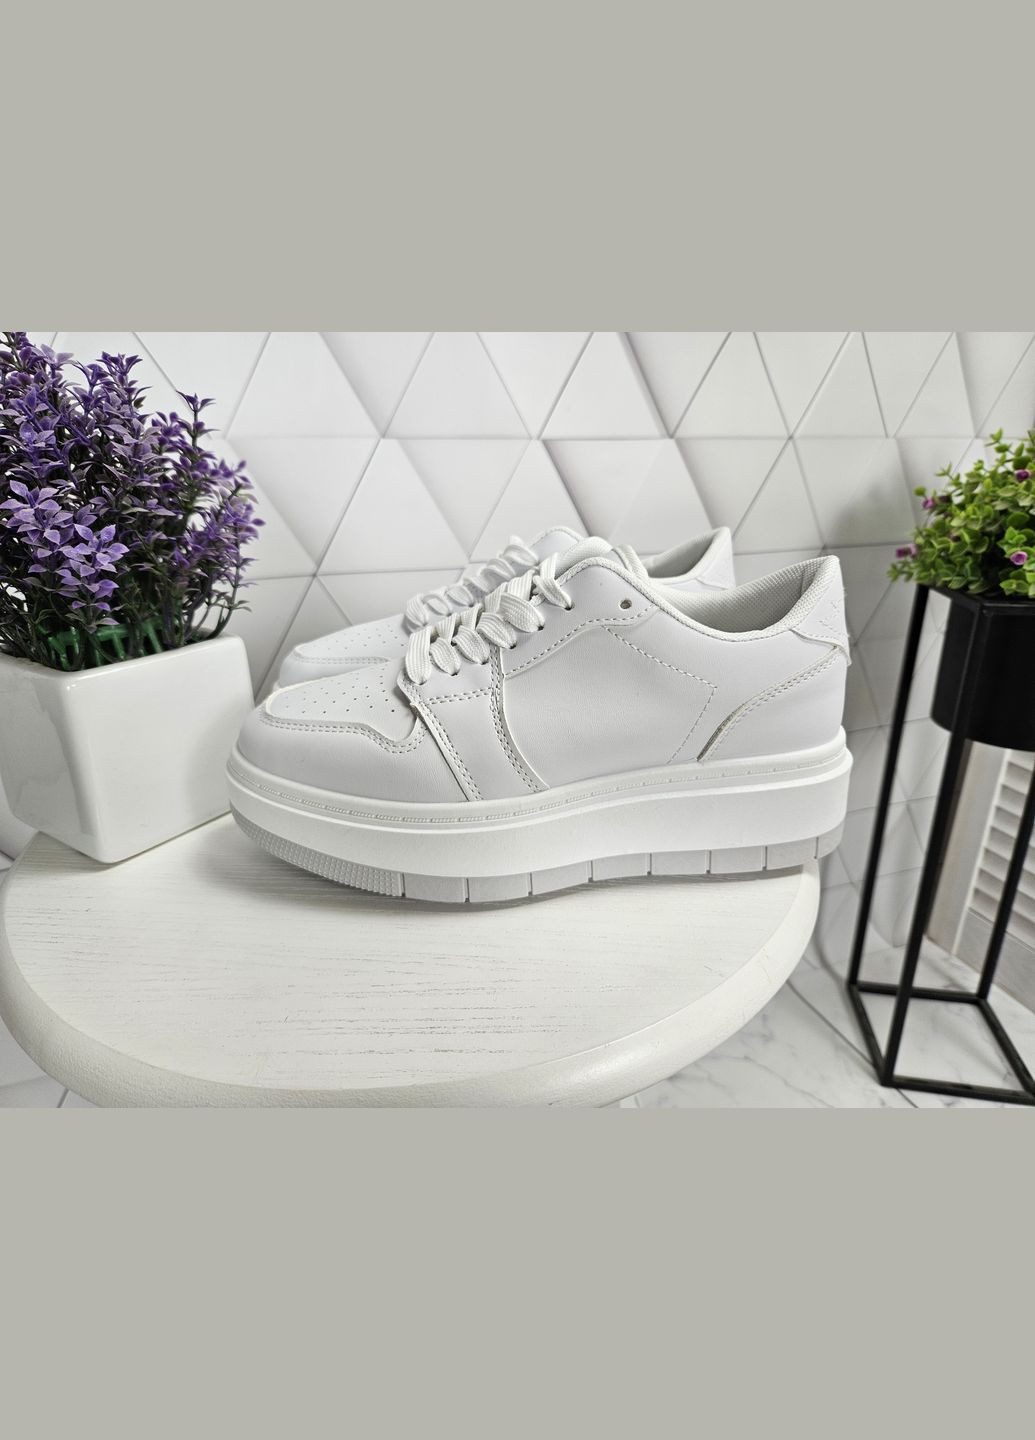 Белые кроссовки белые на высокой платформе (24 см) sp-2899 No Brand